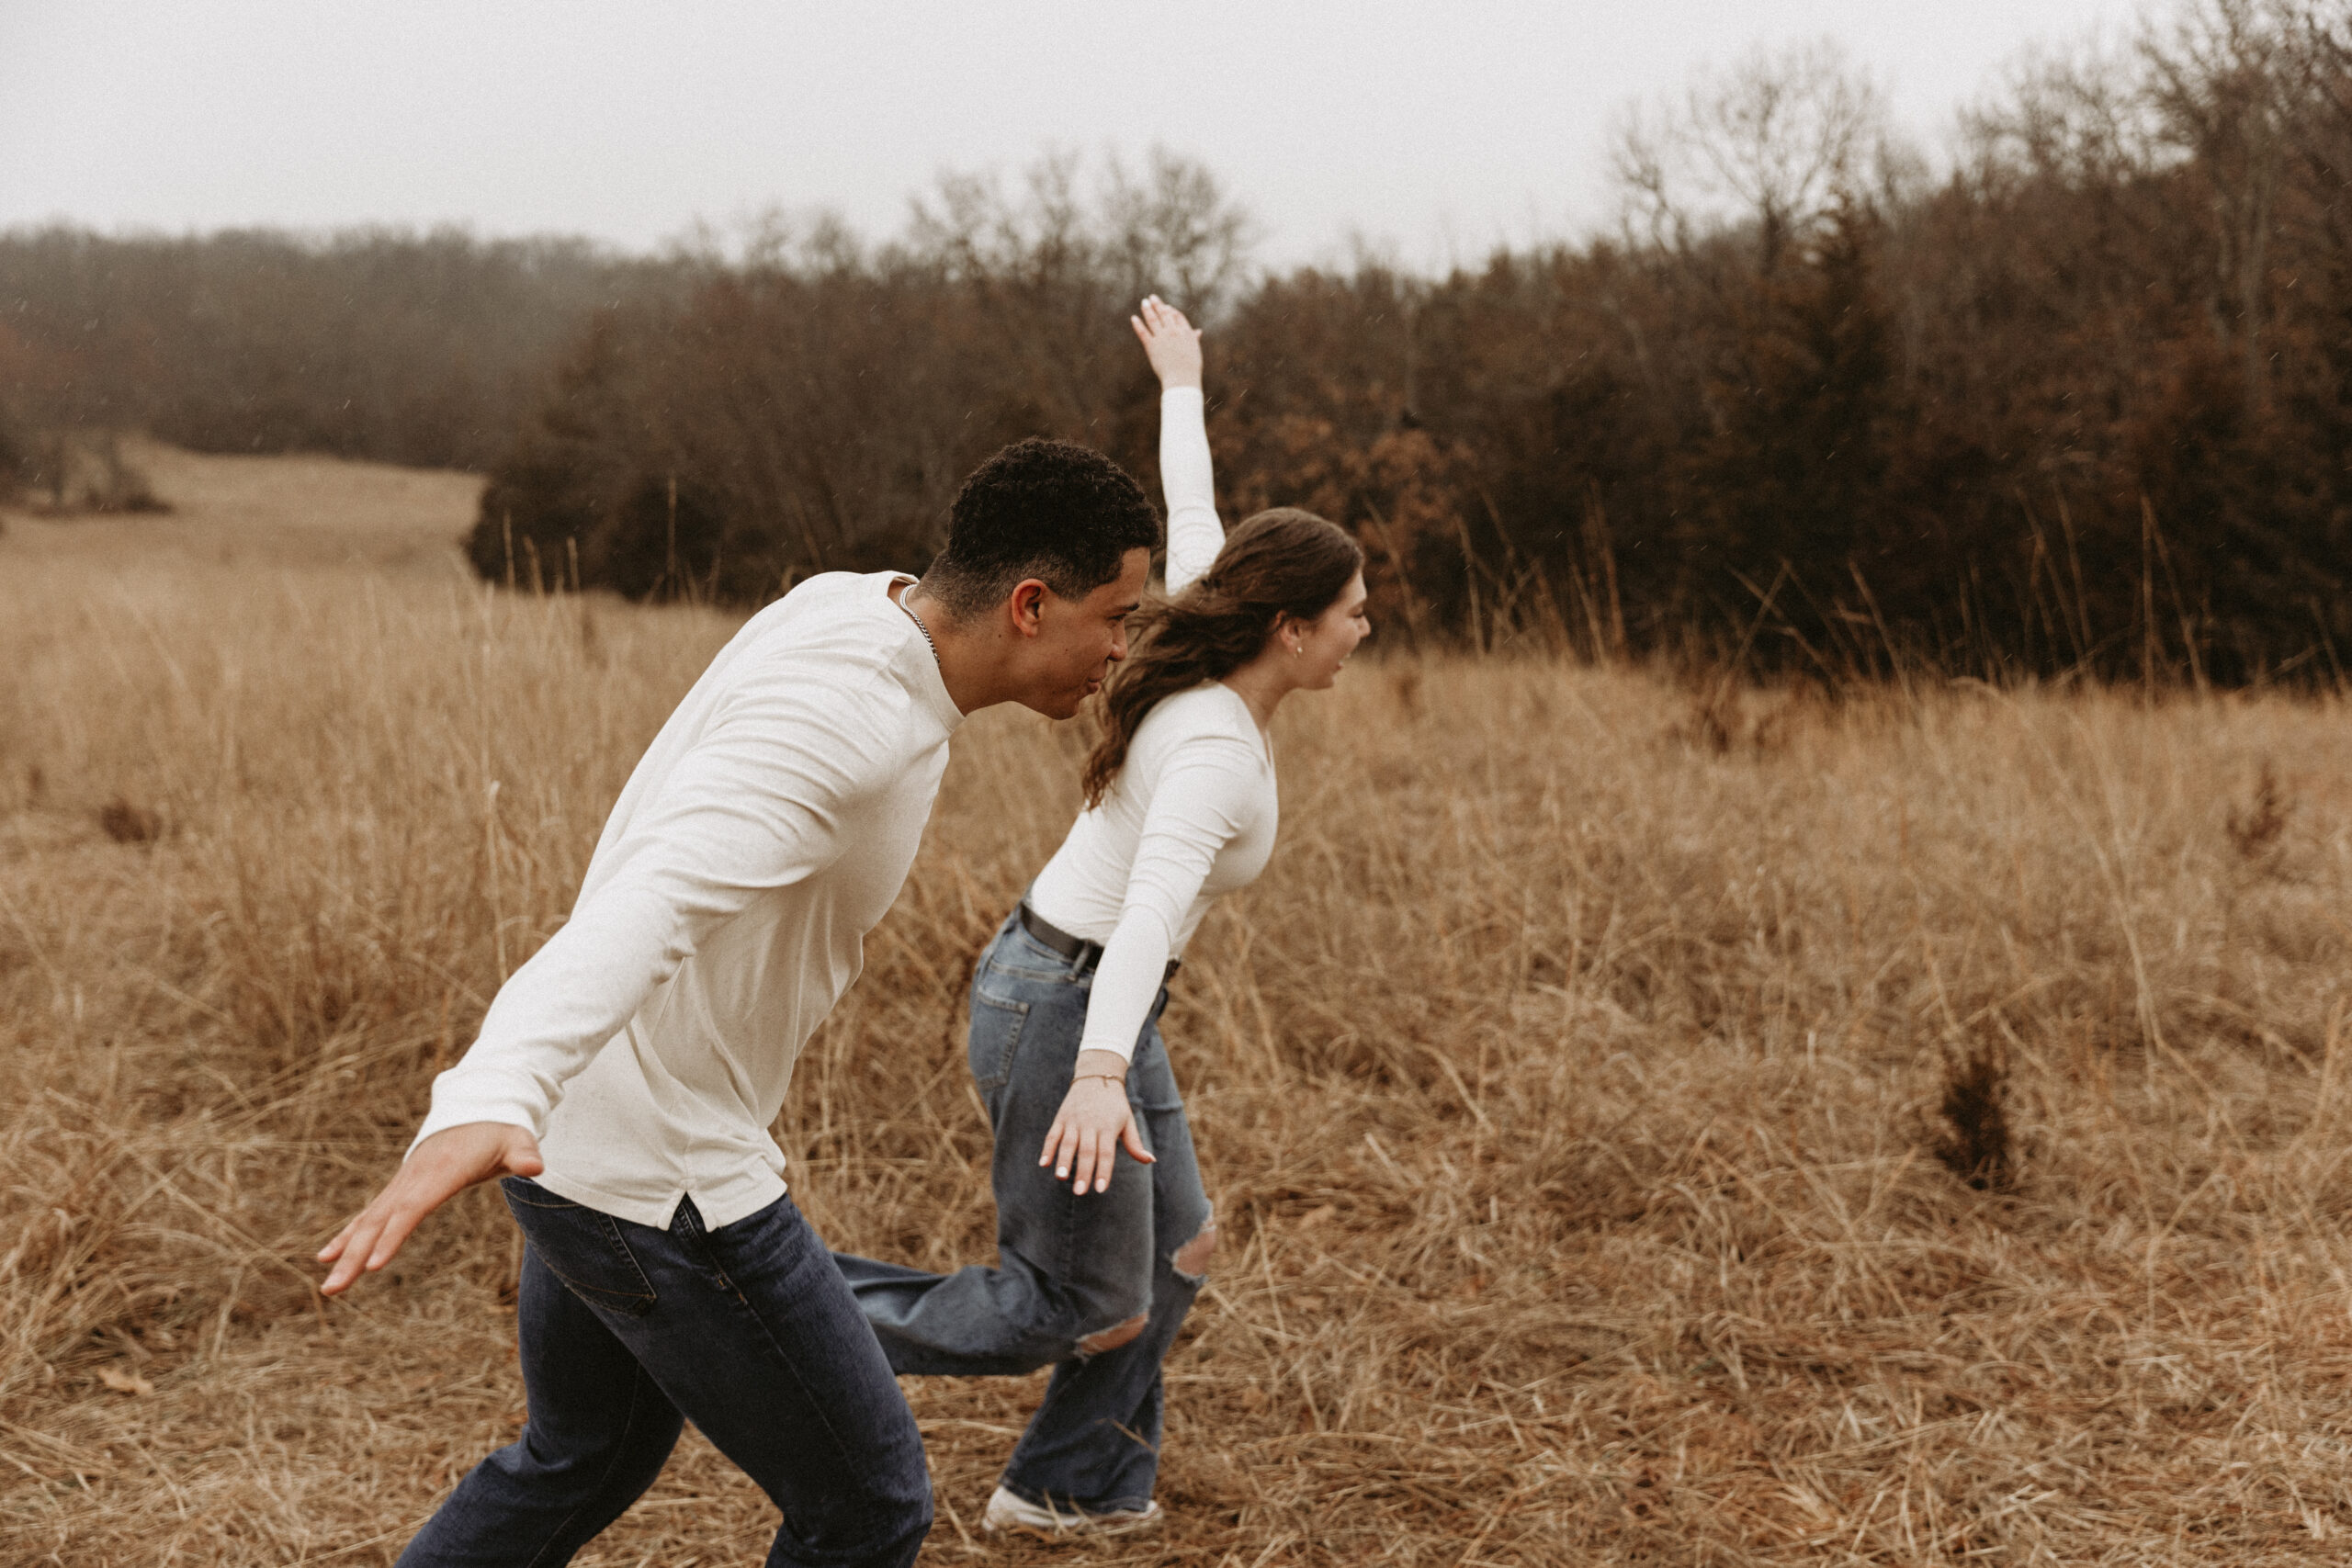 Young couple soars like birds in open field.